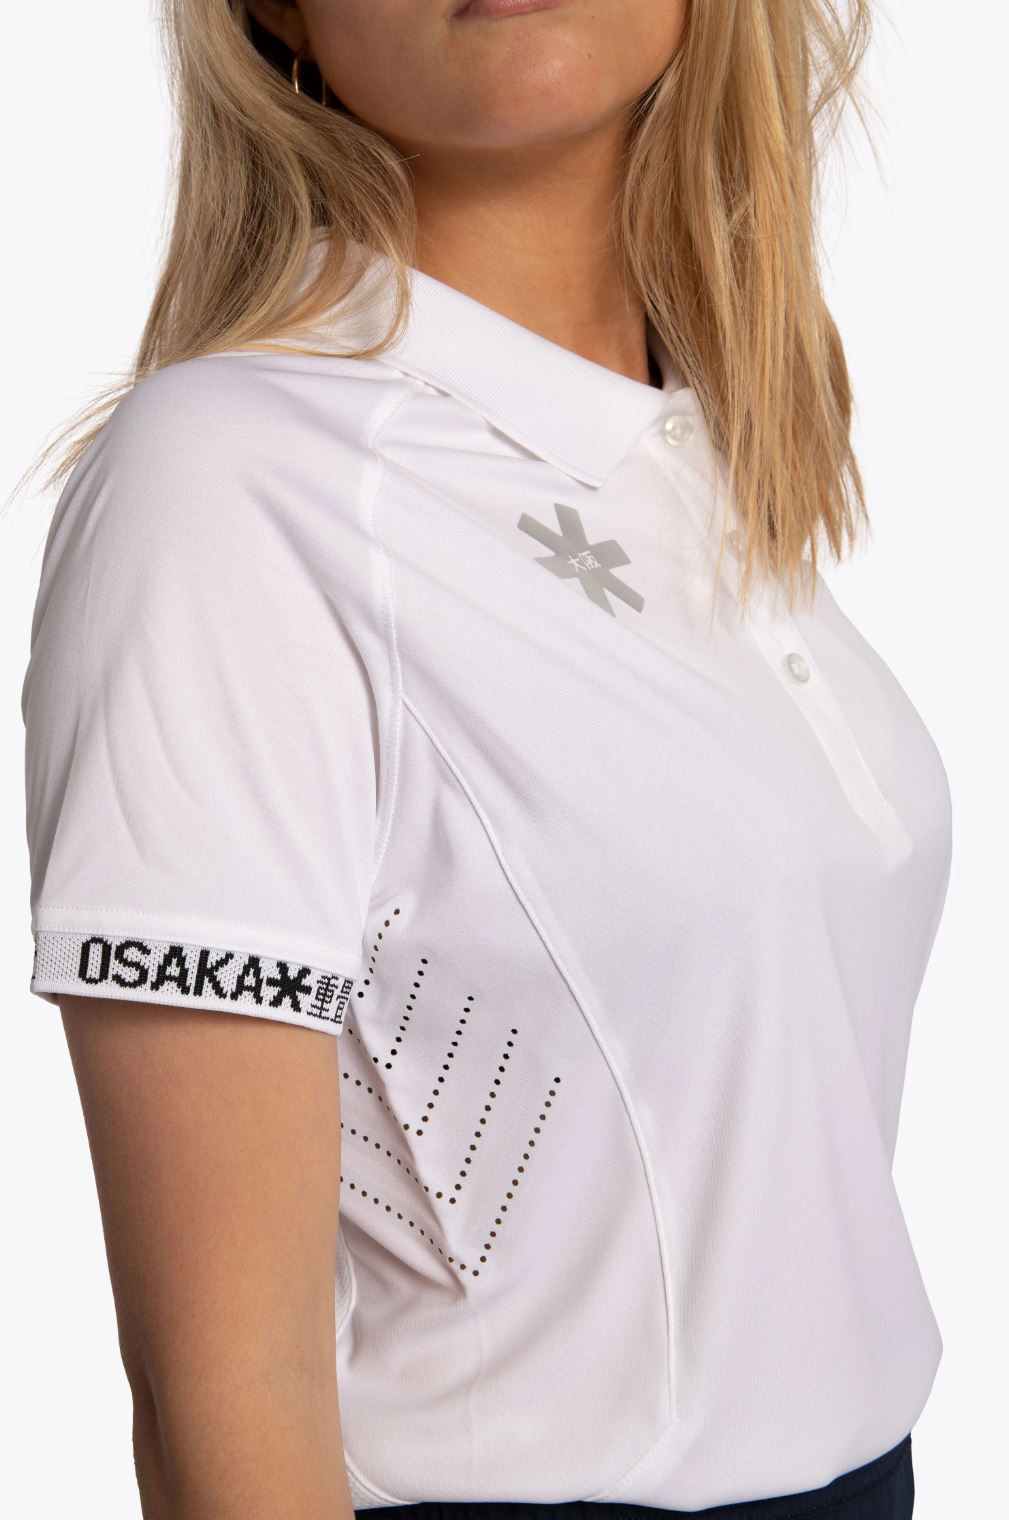 Osaka Women's Polo Jersey (Hvid) - XL